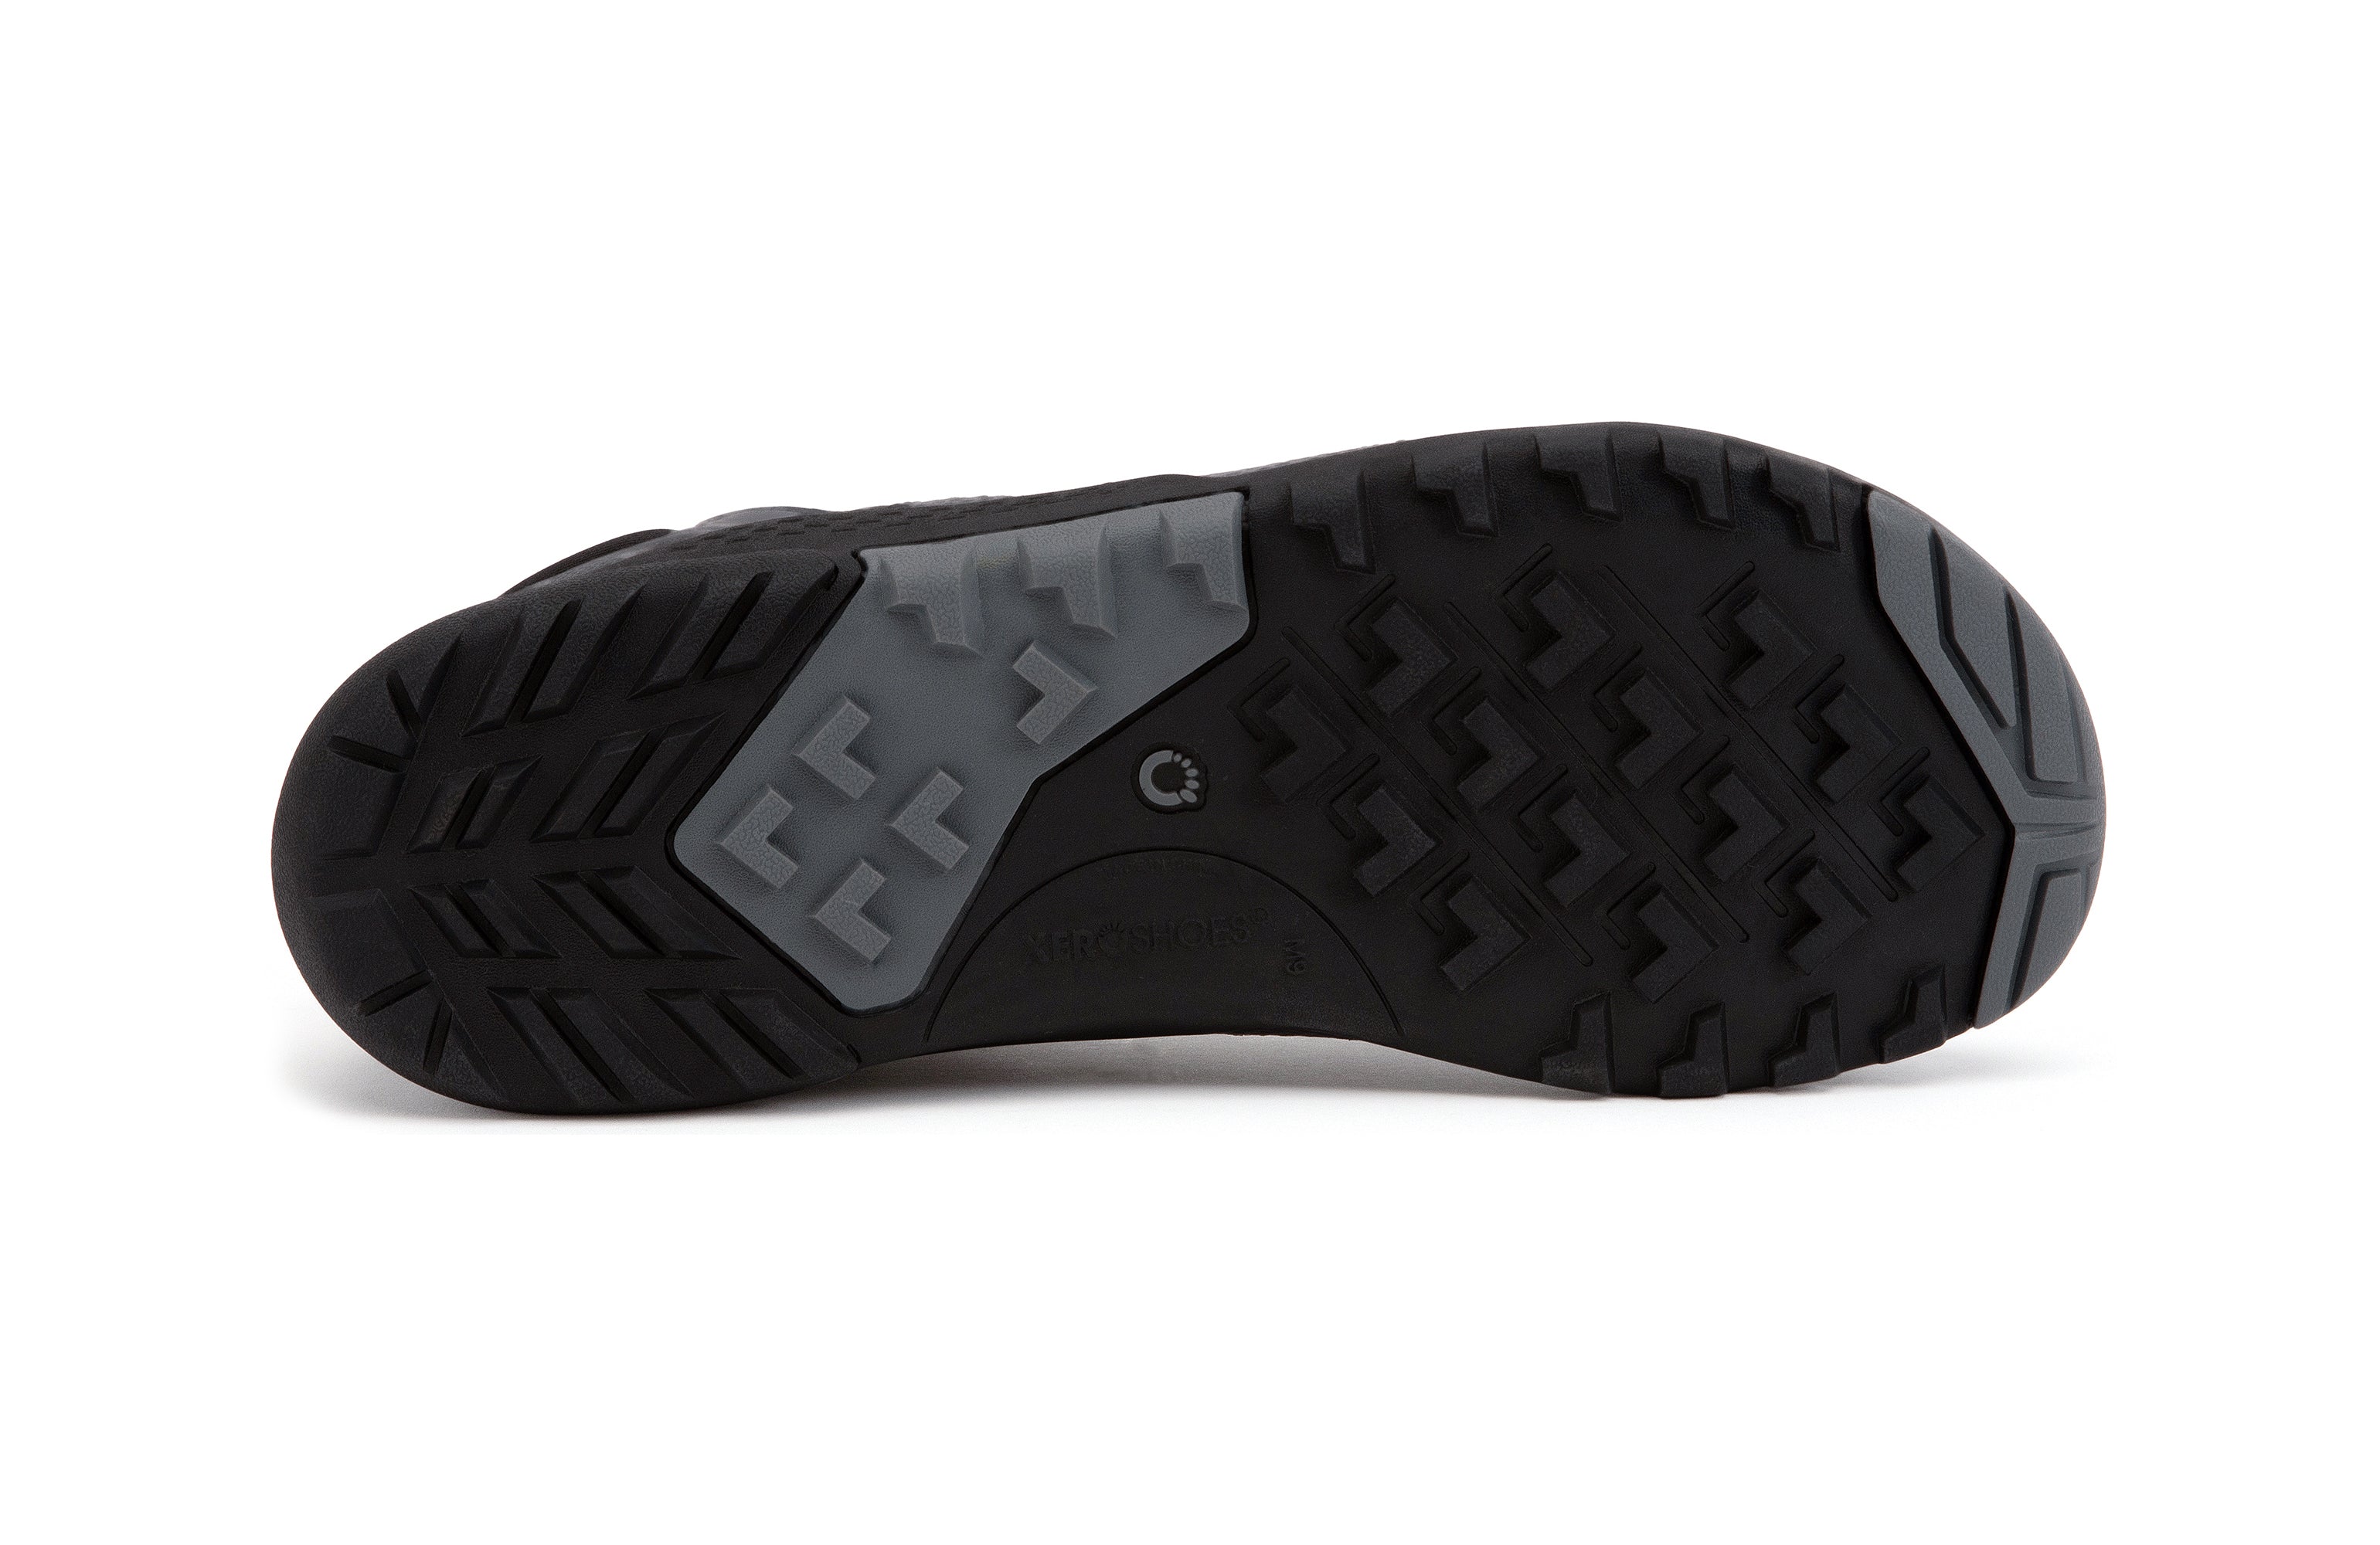 Xero Shoes Xcursion Fusion barfods støvler til mænd i farven asphalt, saal